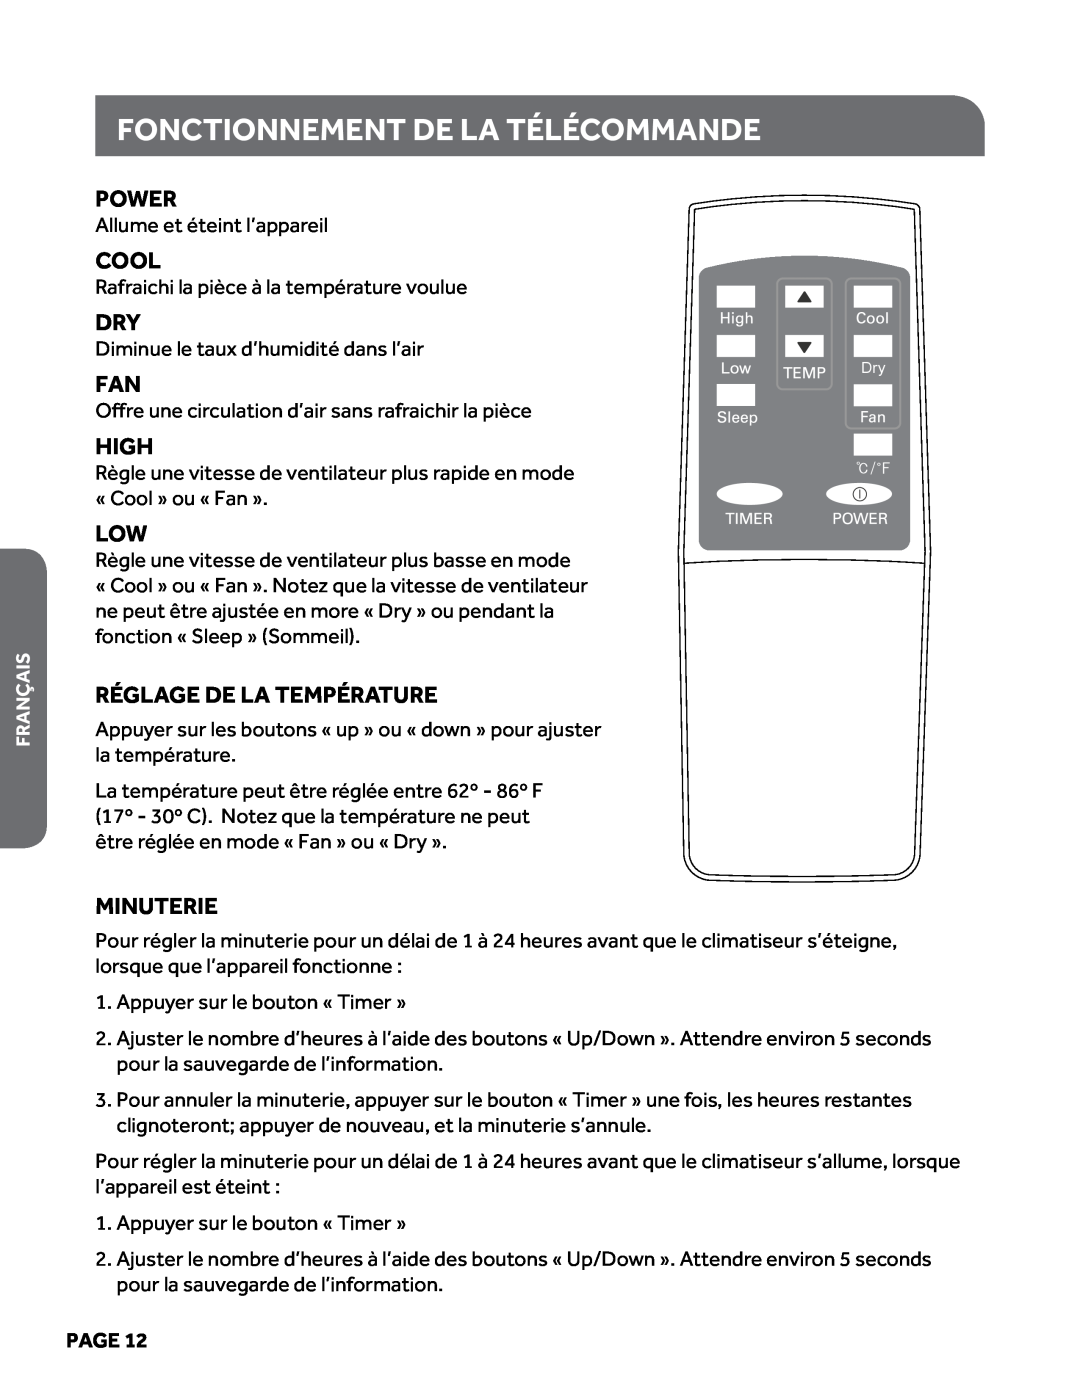 Haier HPY08XCM manual Fonctionnement de la télécommande, Power, Cool, High, Réglage de la température, Minuterie, Page 